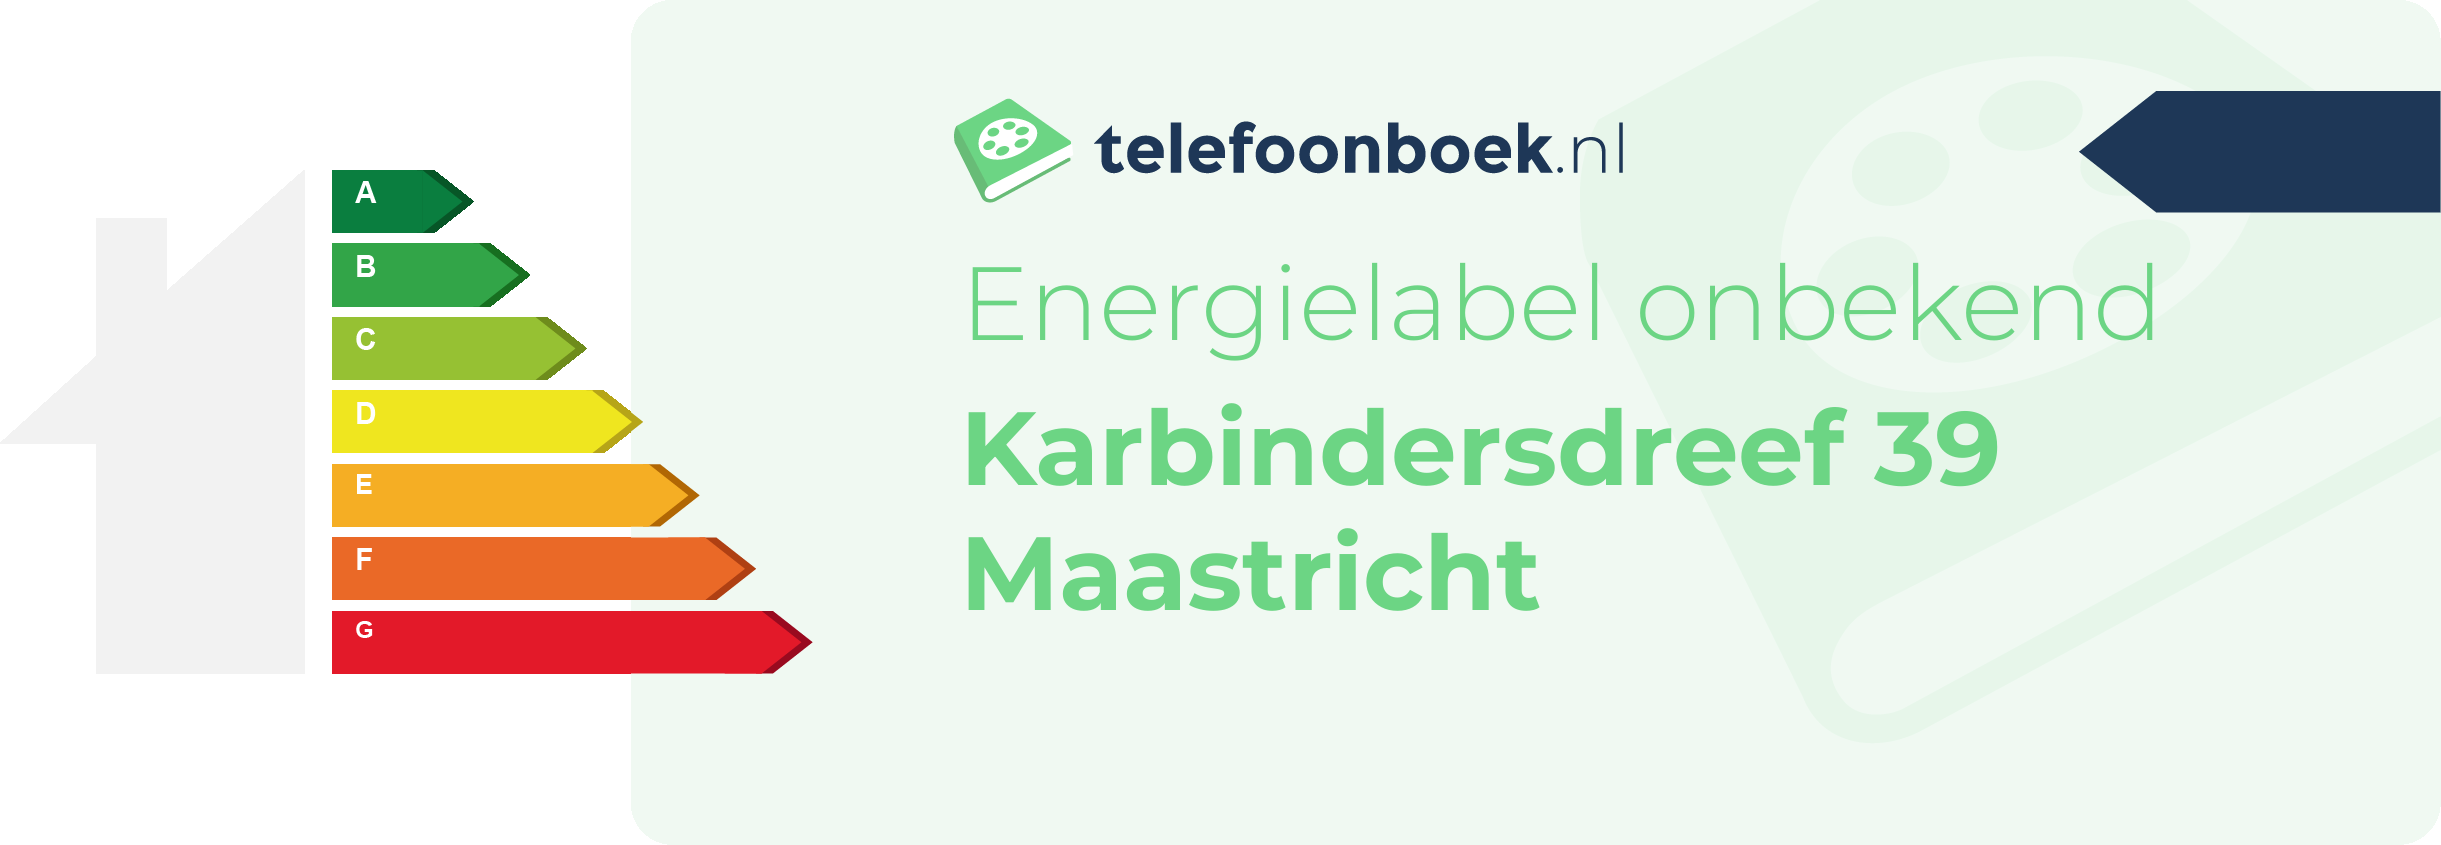 Energielabel Karbindersdreef 39 Maastricht